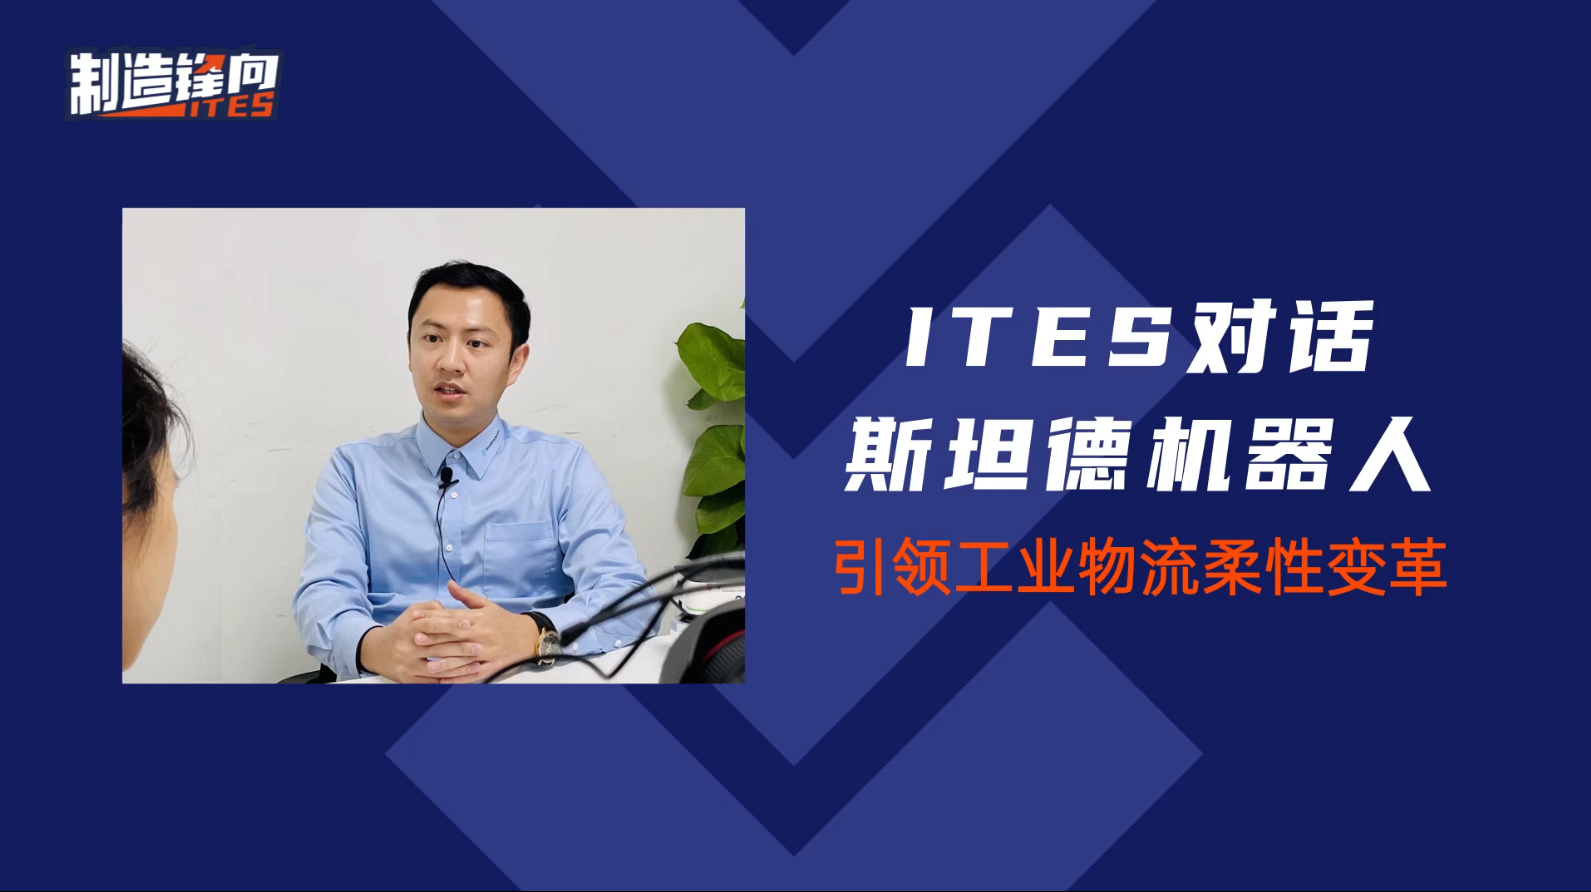 本视频为ITES深圳工业展对话斯坦德机器人运营总监梁凯翔先生的采访实录，让我们一起走进3C及半导体行业市占率第一名的斯坦德机器人！